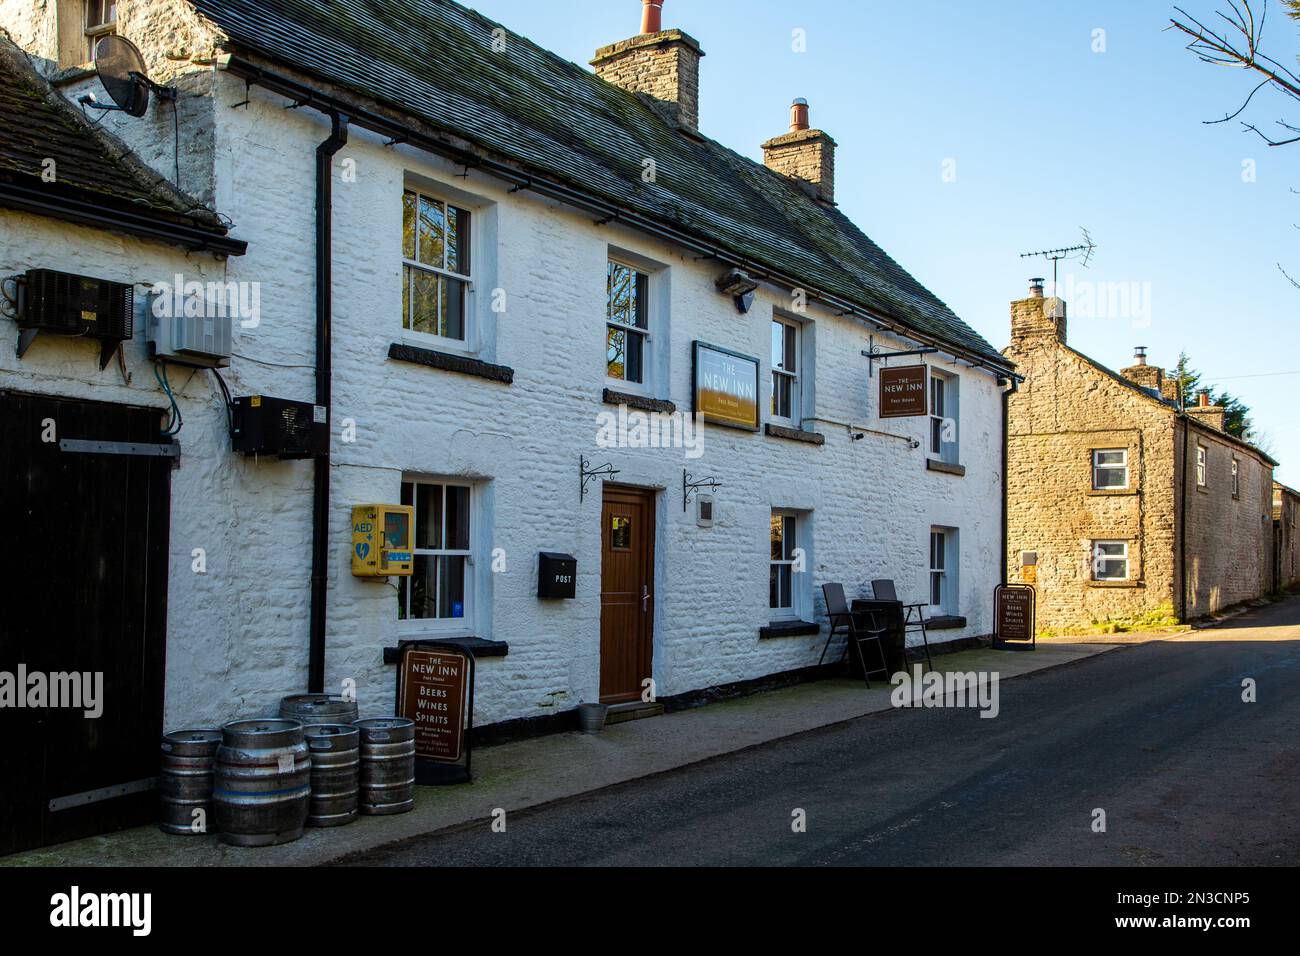 Le New inn pub dans les landes de Staffordshire pic village de district de Flash , le plus haut village de Grande-Bretagne Banque D'Images